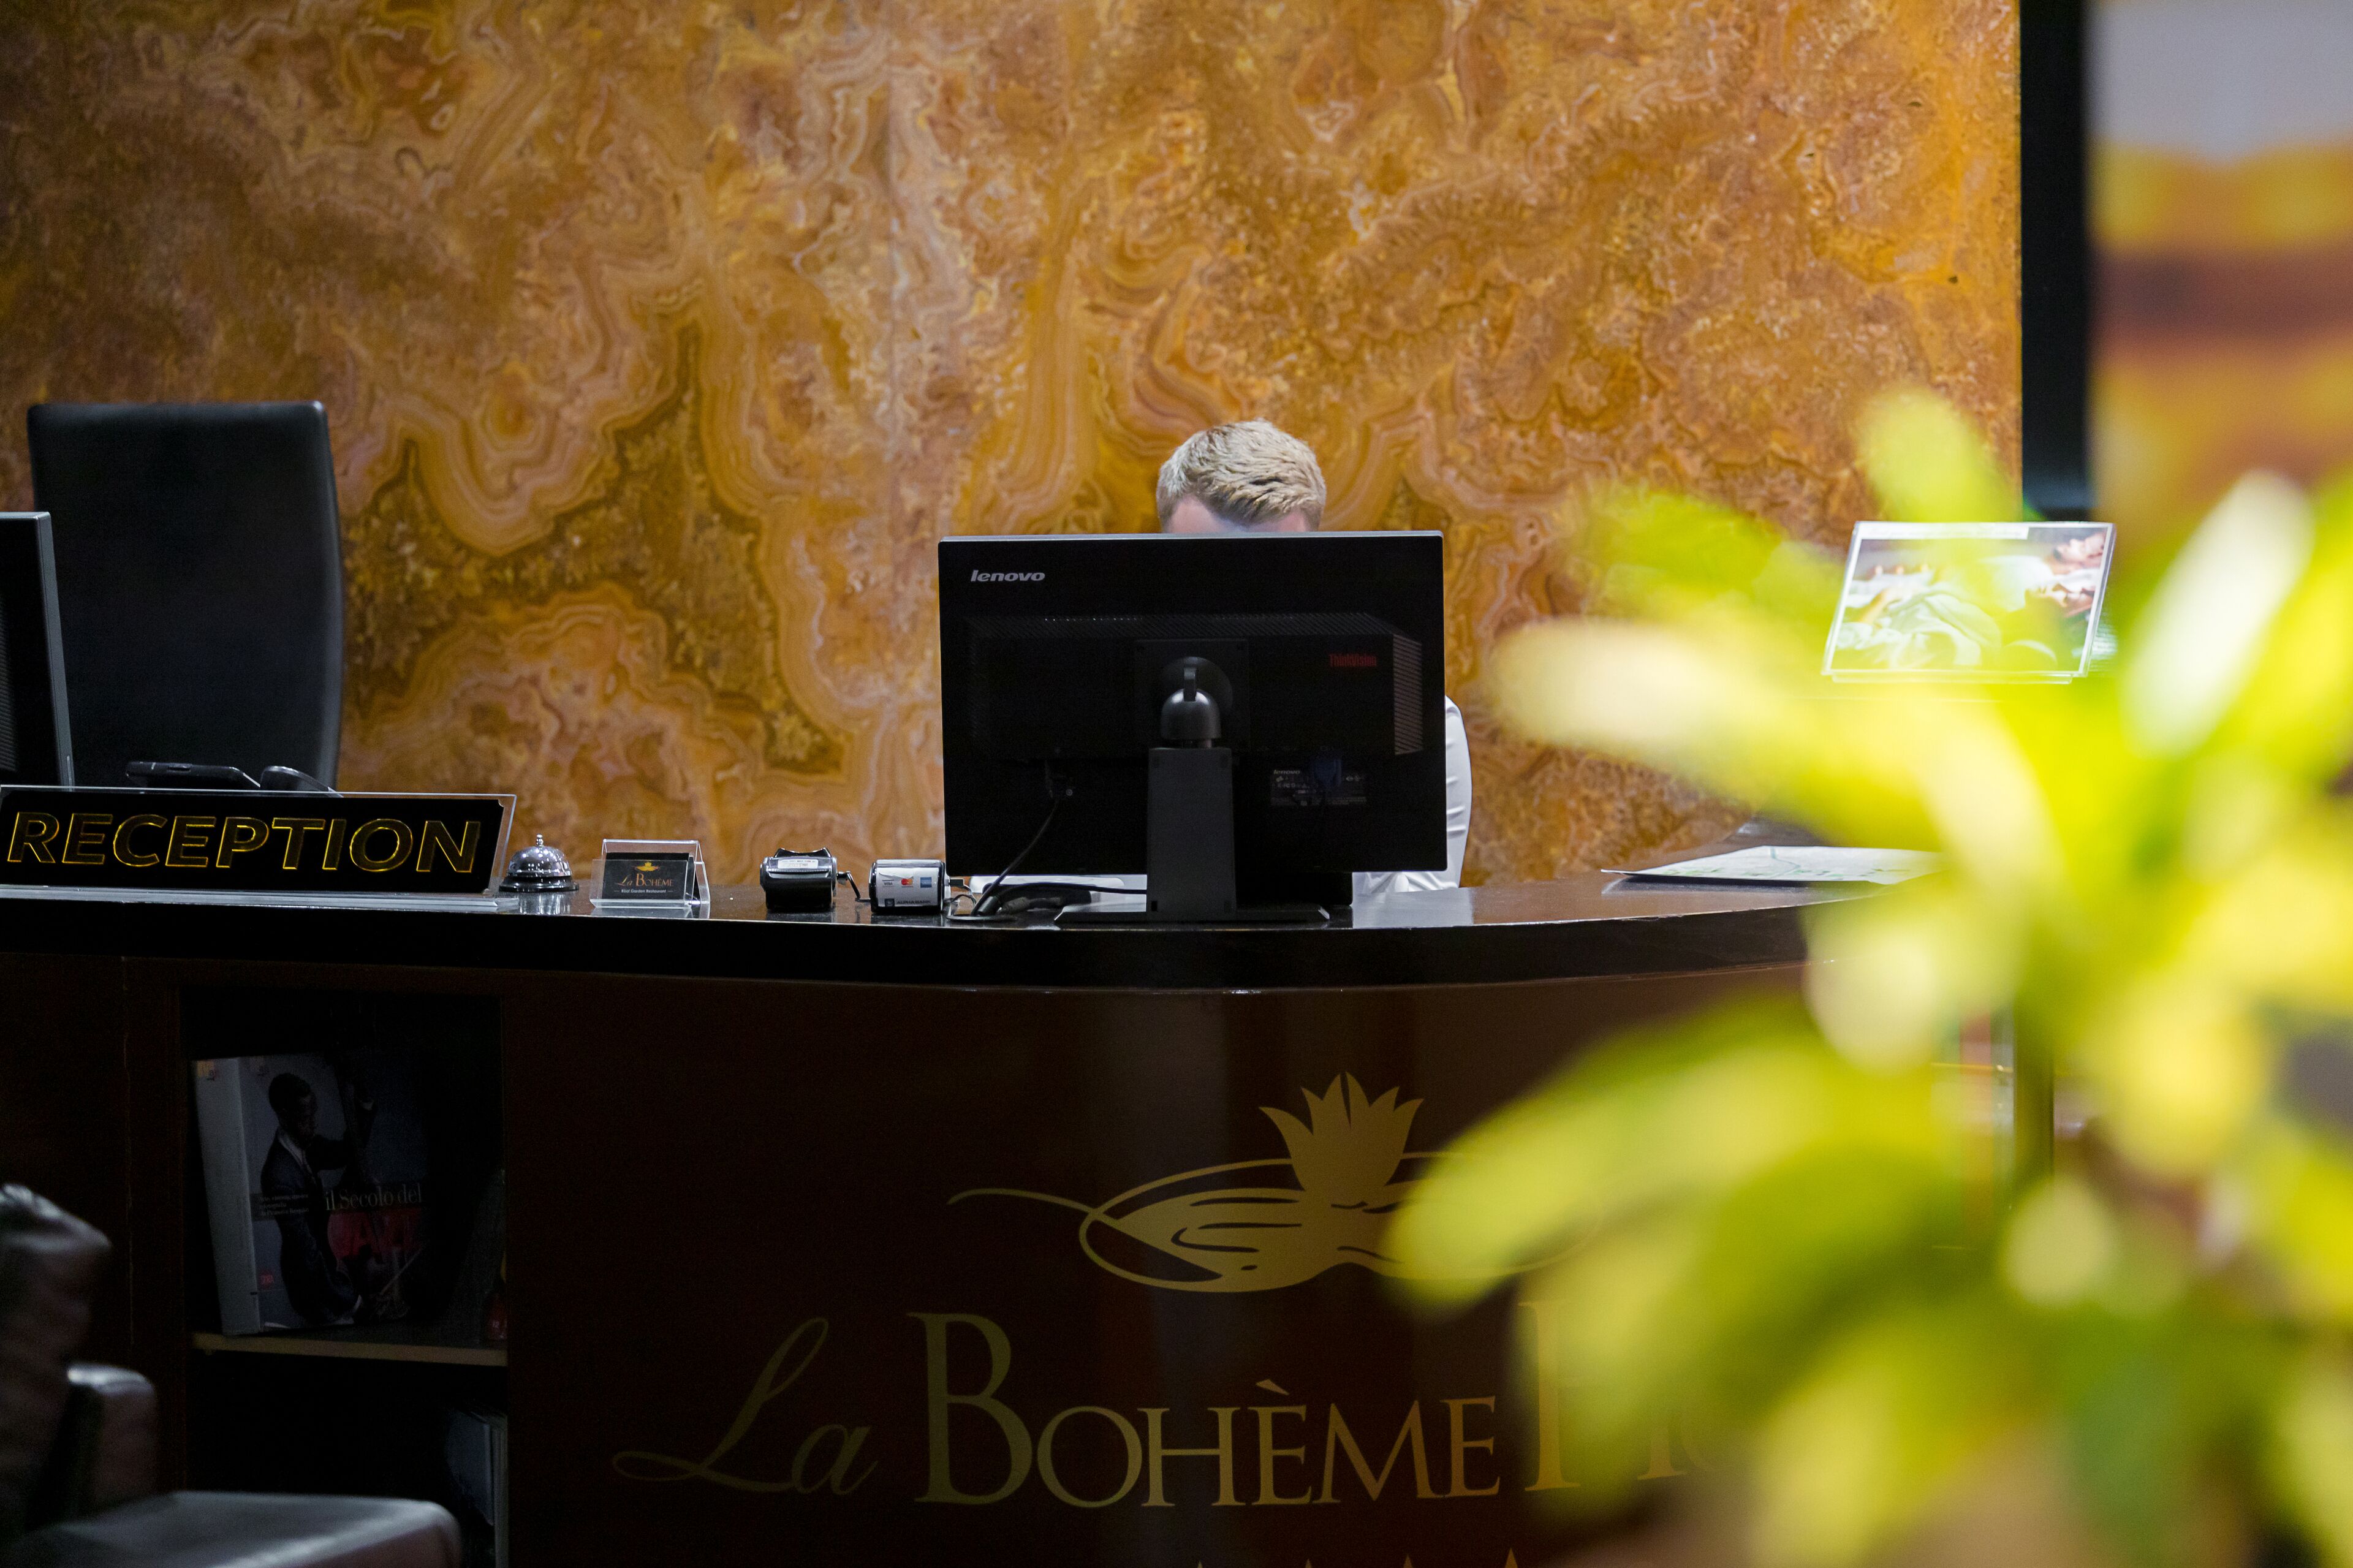 La Boheme Hotel